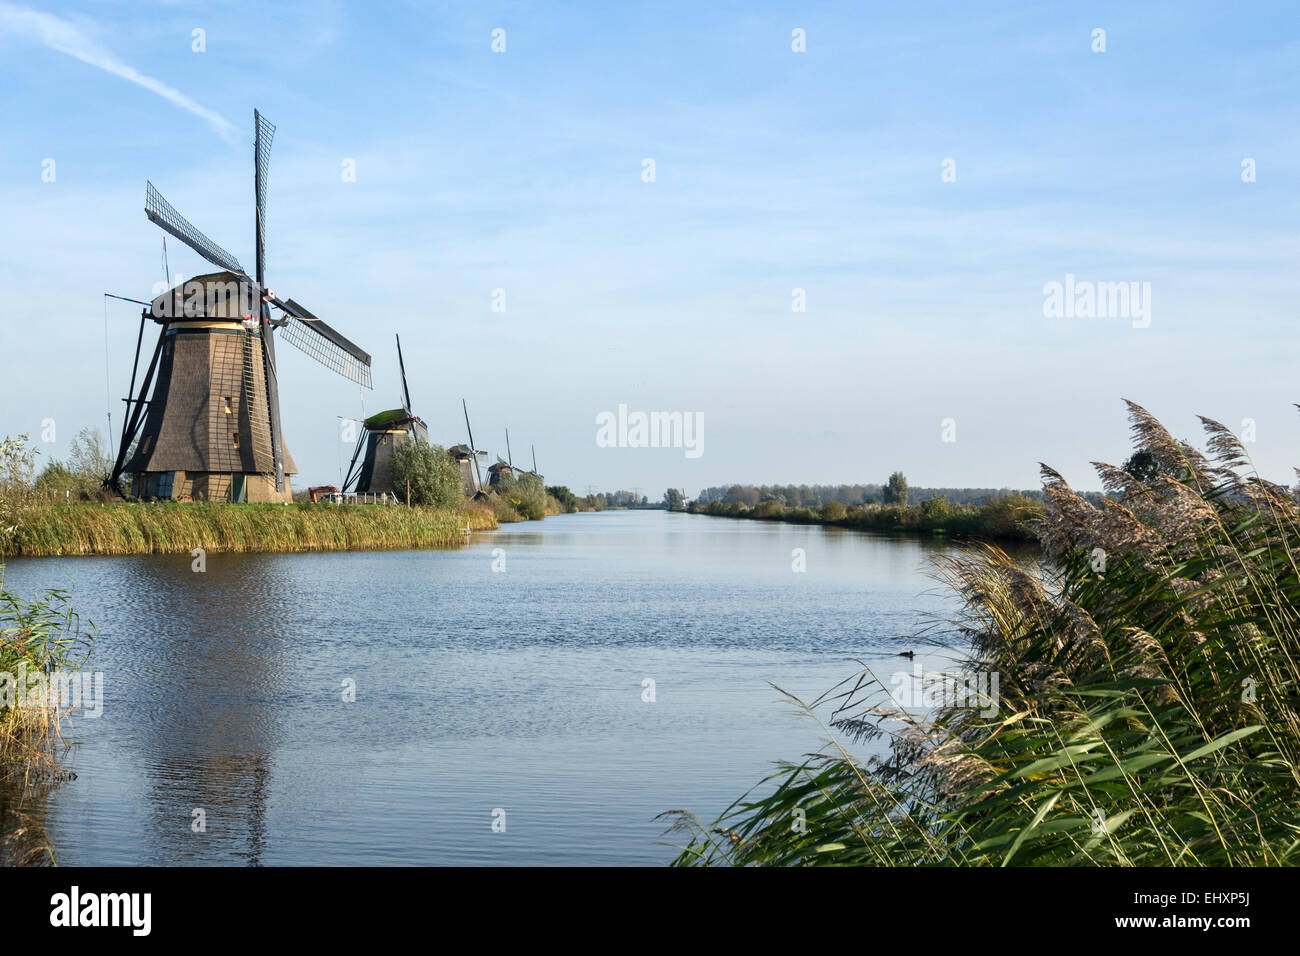 Windmühlen in Kinderdijk in den Niederlanden die stammen aus dem 18. Jahrhundert und wurden verwendet, um Wasser aus dem Land abfließen. Stockfoto